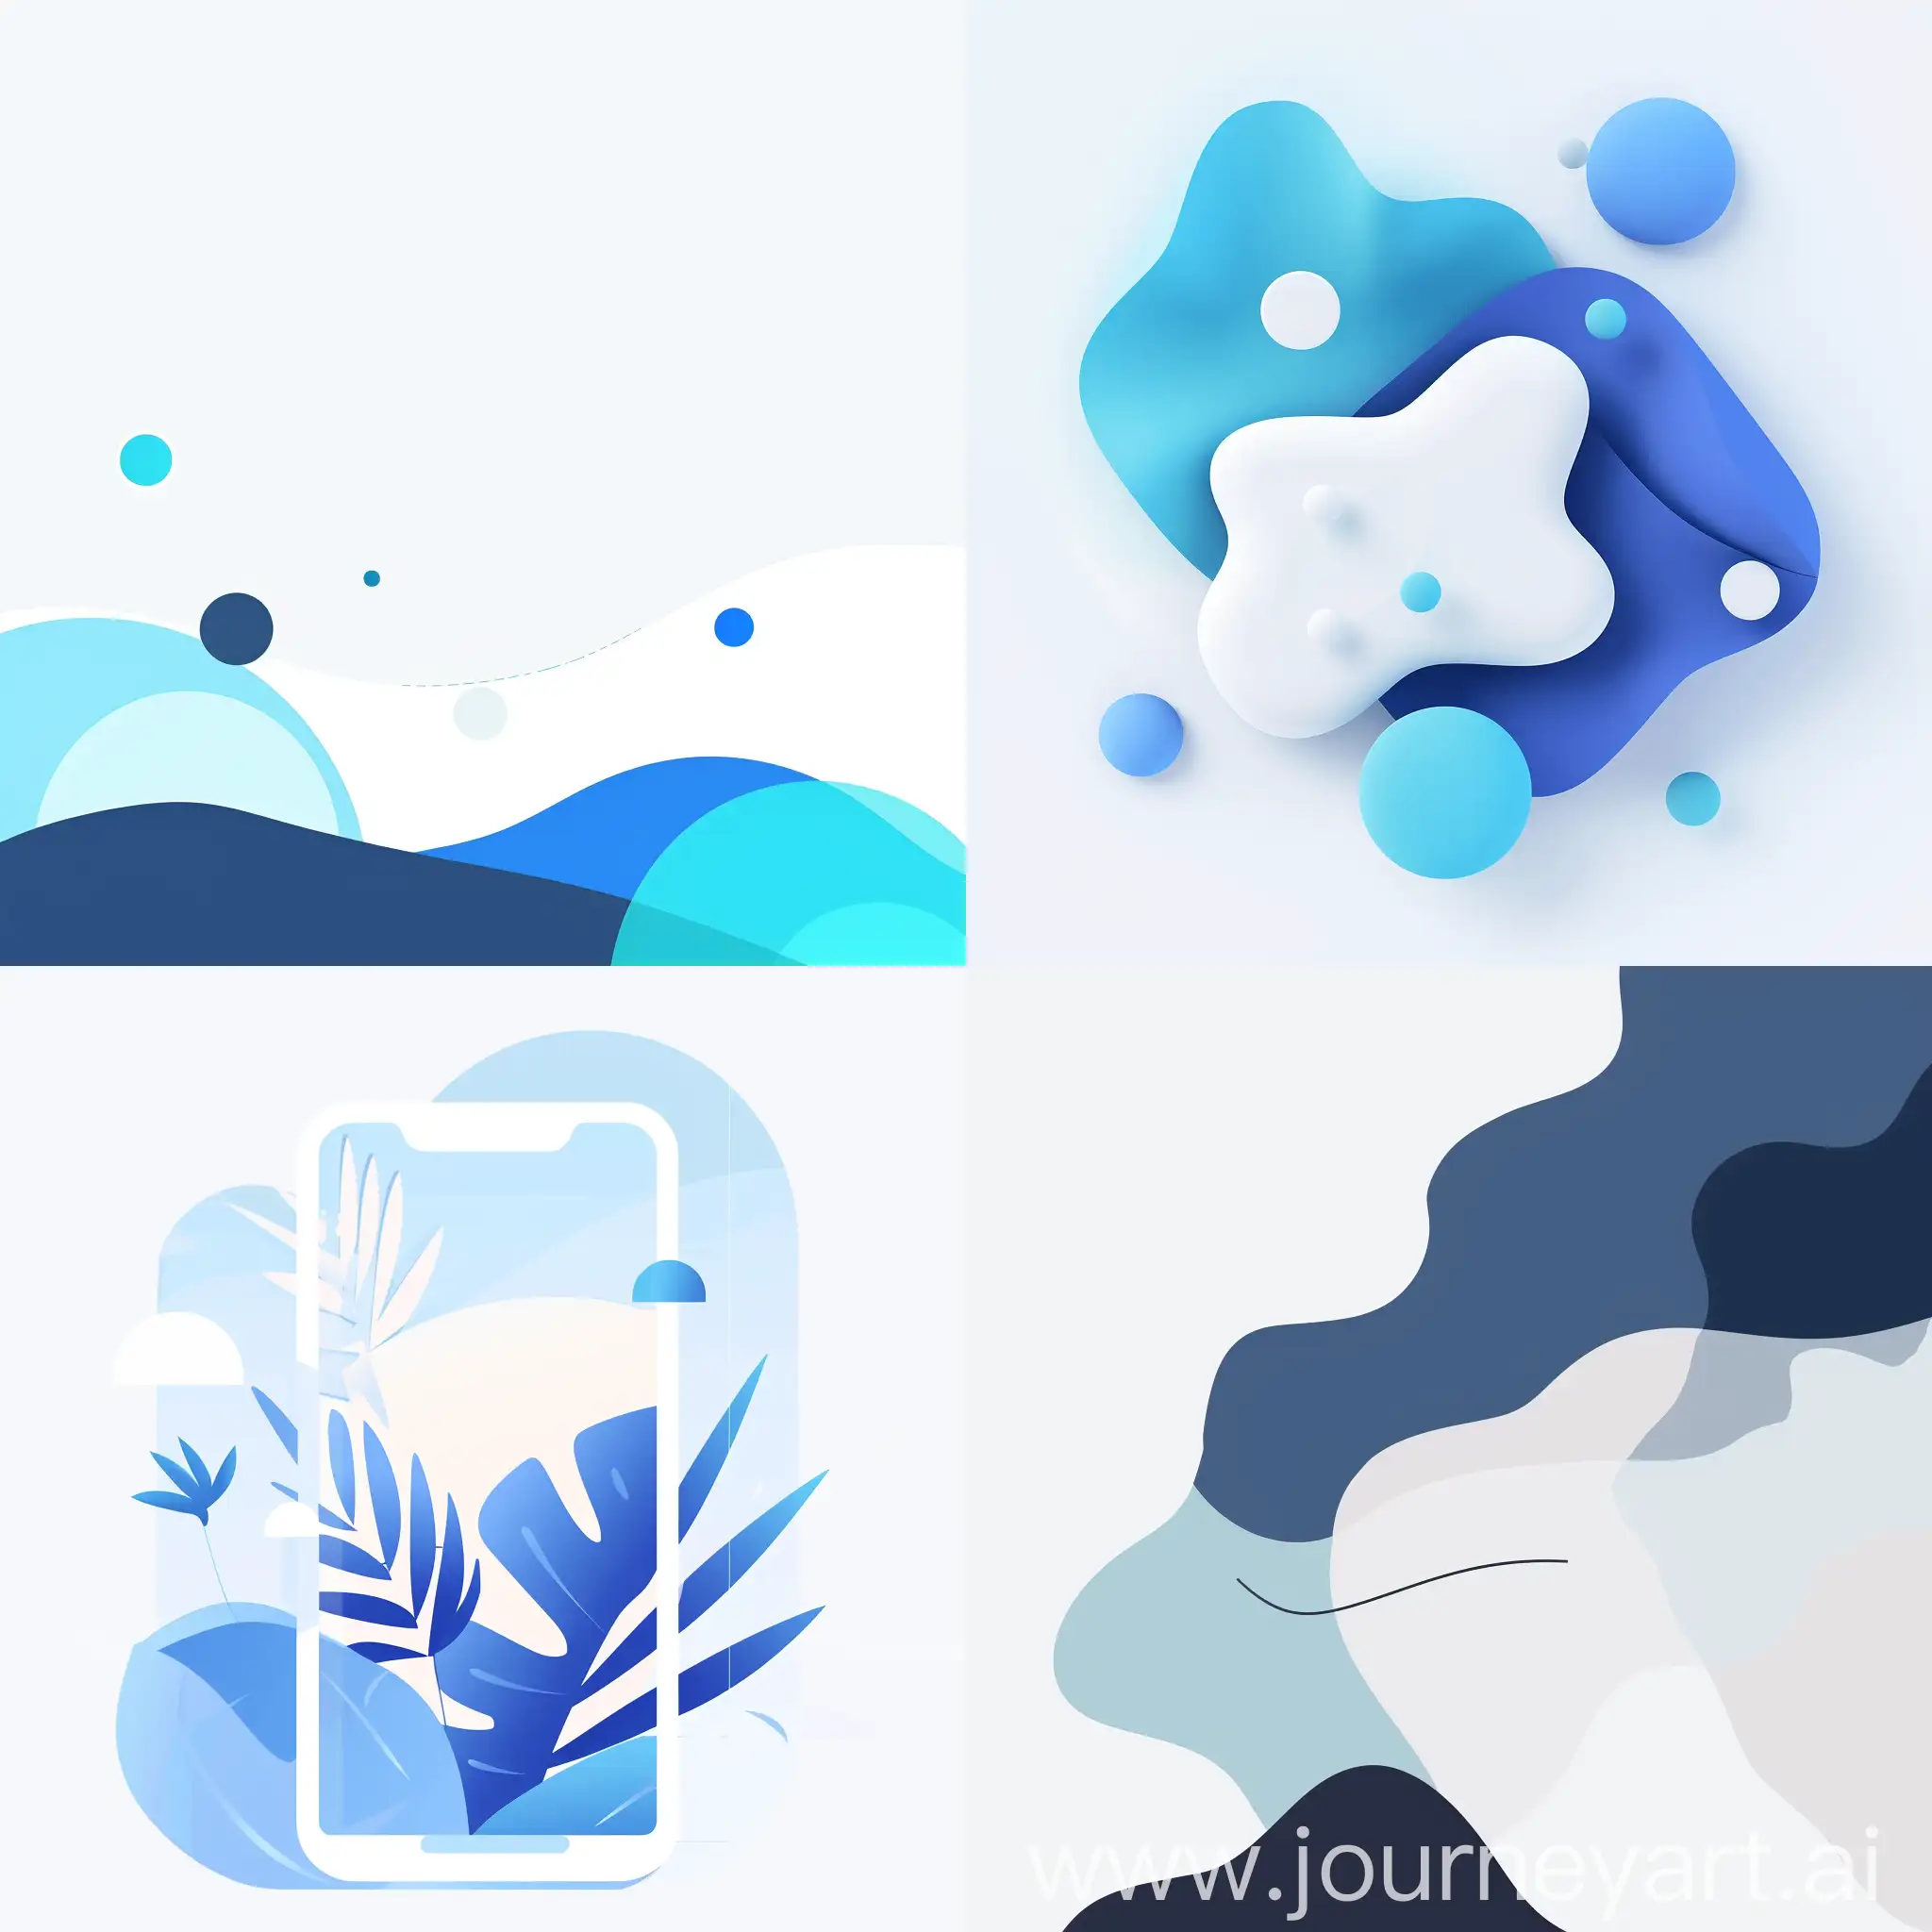 Придумай минималистичный дизайн для постов в группе в социальной сети, Фон должен быть белым, Остальные части должны быть голубыми и синими